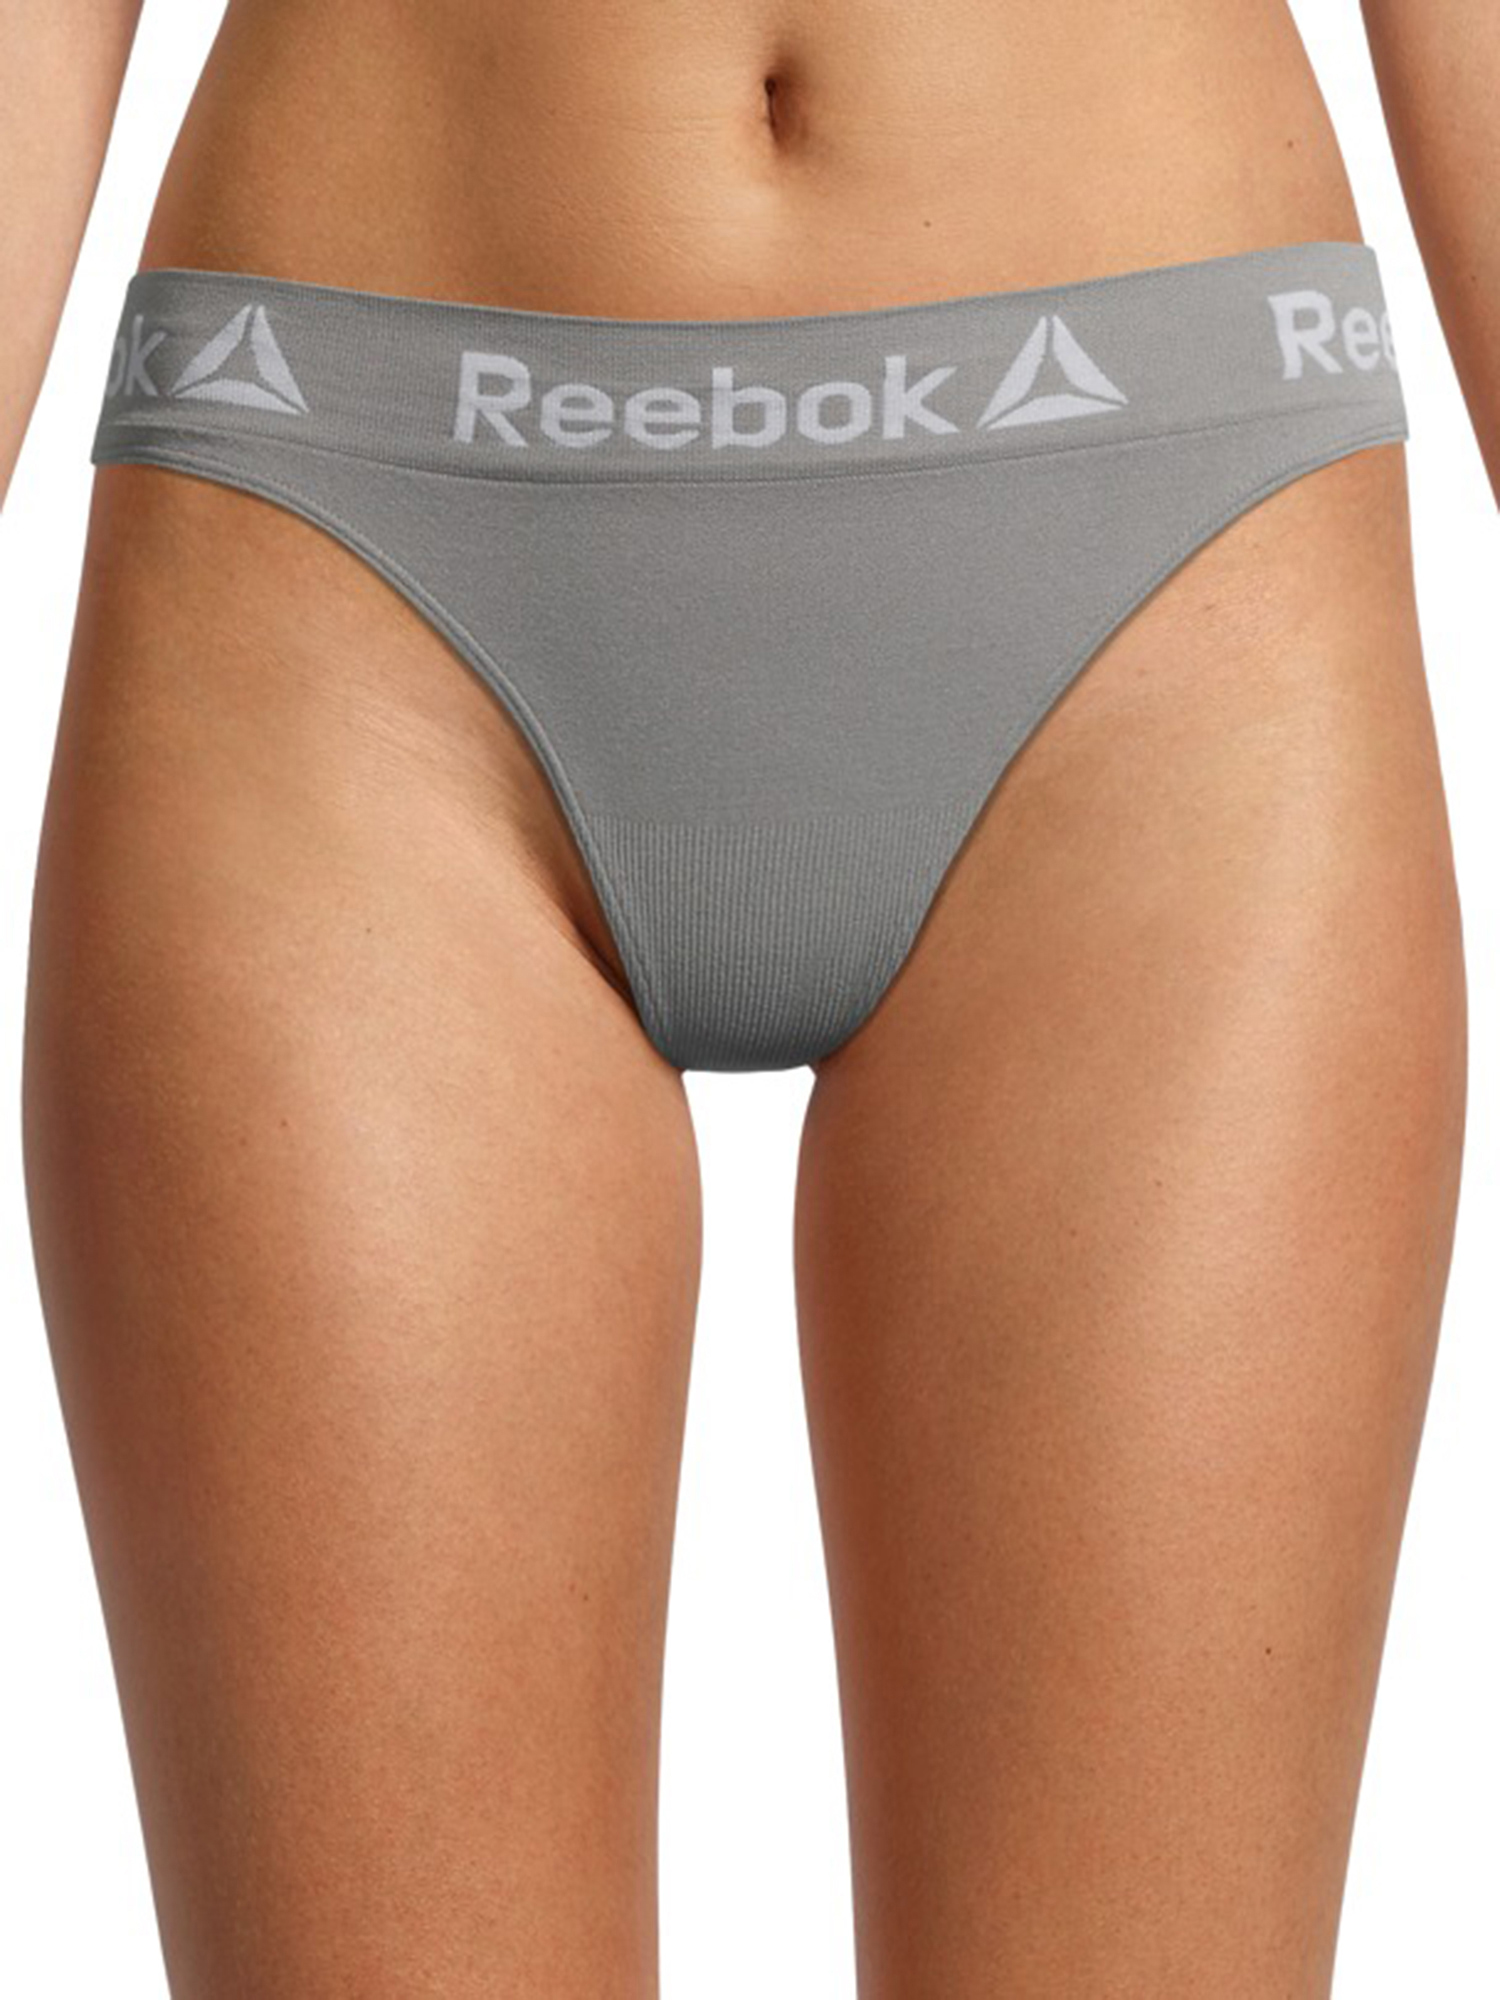 Reebok Women's Seamless Thong Panties, 4-Pack - image 3 of 5